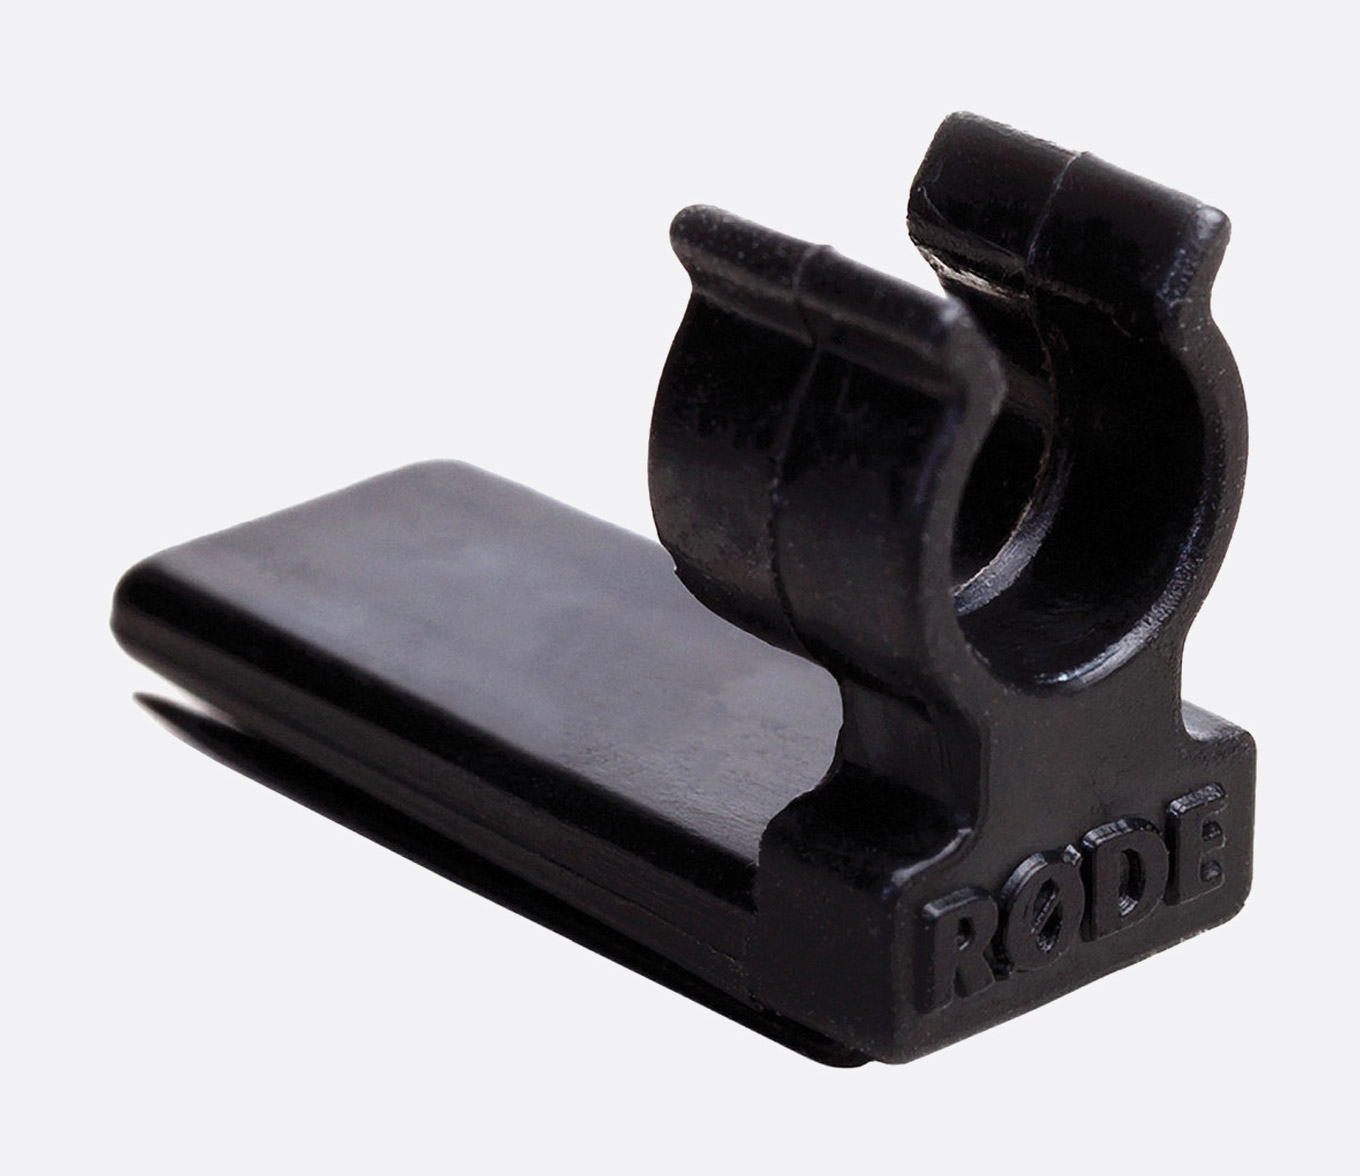 CANFORD CONNECTEUR Jack miniature femelle, pour câble/rallonge, 3.5mm 3pts,  noir